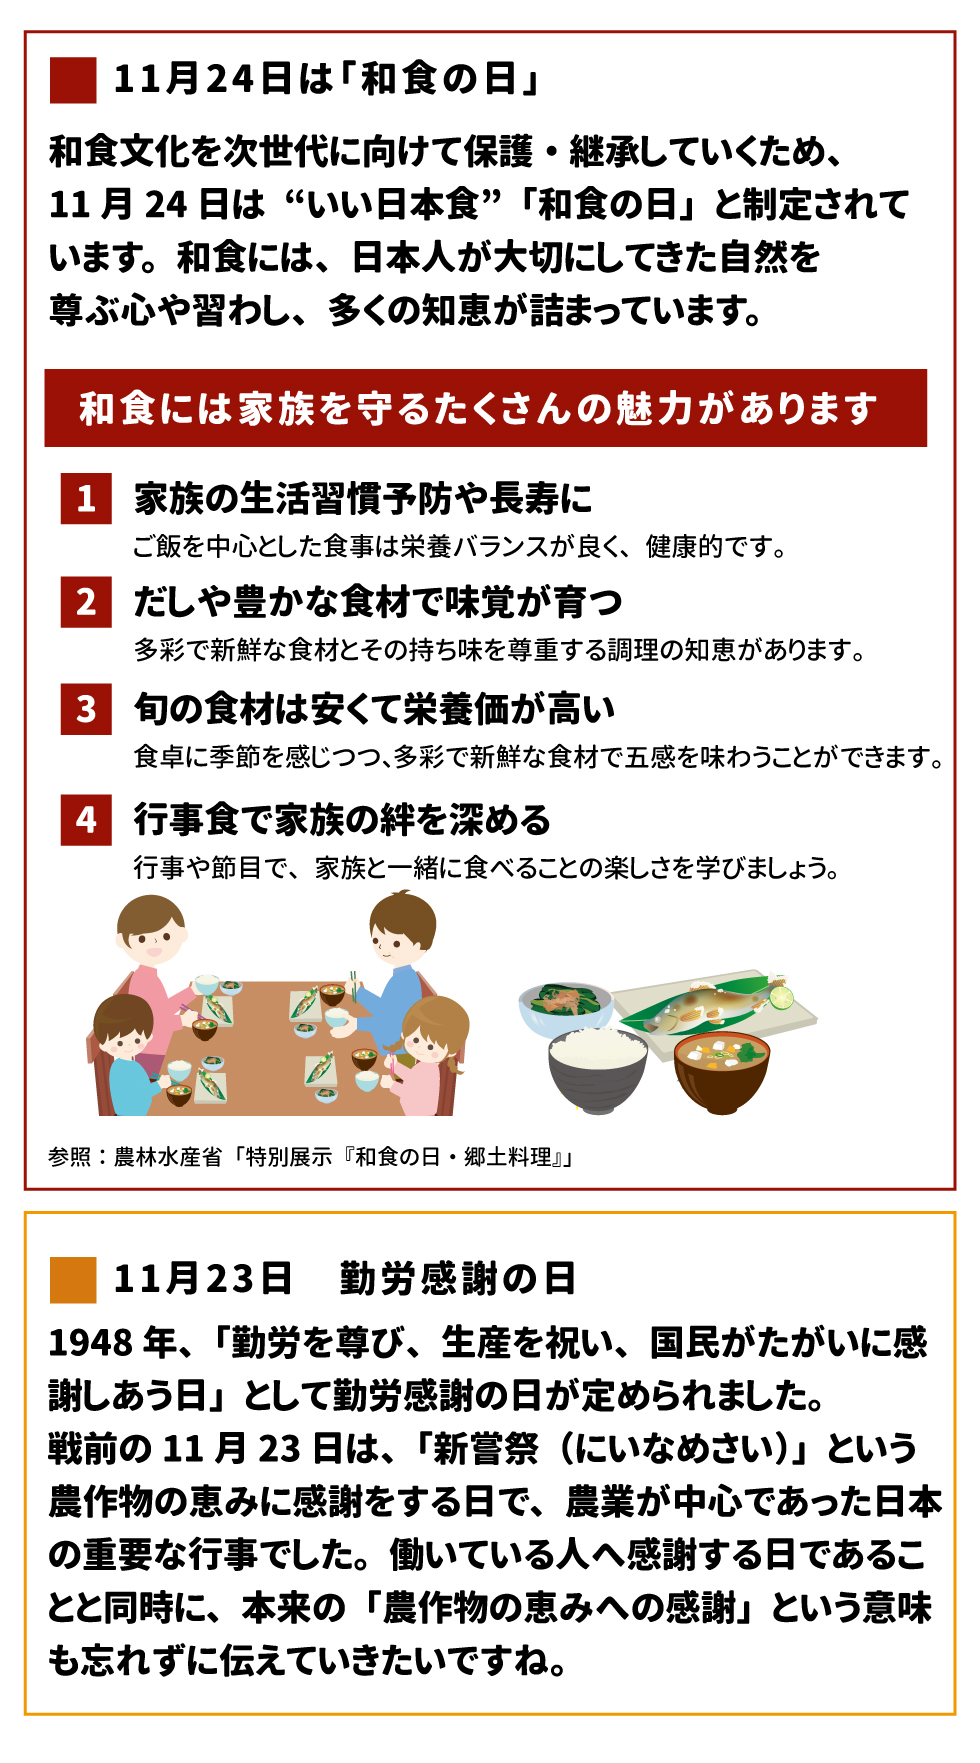 11月24日は「和食の日」 和食文化を次世代に向けて保護・継承していくため、11月24日は“いい日本食”「和食の日」と制定されています。和食には、日本人が大切にしてきた自然を尊ぶ心や習わし、多くの知恵が詰まっています。 和食には家族を守るたくさんの魅力があります 1．家族の生活習慣予防や長寿に ご飯を中心とした食事は栄養バランスが良く、健康的です。 2．だしや豊かな食材で味覚が育つ 多彩で新鮮な食材とその持ち味を尊重する調理の知恵があります。 3．旬の食材は安くて栄養価が高い 食卓に季節を感じつつ、多彩で新鮮な食材で五感を味わうことができます。 4．行事食で家族の絆を深める 行事や節目で、家族と一緒に食べることの楽しさを学びましょう。 参照：農林水産省「特別展示『和食の日・郷土料理』」 11月23日 勤労感謝の日 1948年、「勤労を尊び、生産を祝い、国民がたがいに感謝しあう日」として勤労感謝の日が定められました。戦前の11月23日は、「新嘗祭（にいなめさい）」という農作物の恵みに感謝をする日で、農業が中心であった日本の重要な行事でした。働いている人へ感謝する日であることと同時に、本来の「農作物の恵みへの感謝」という意味も忘れずに伝えていきたいですね。